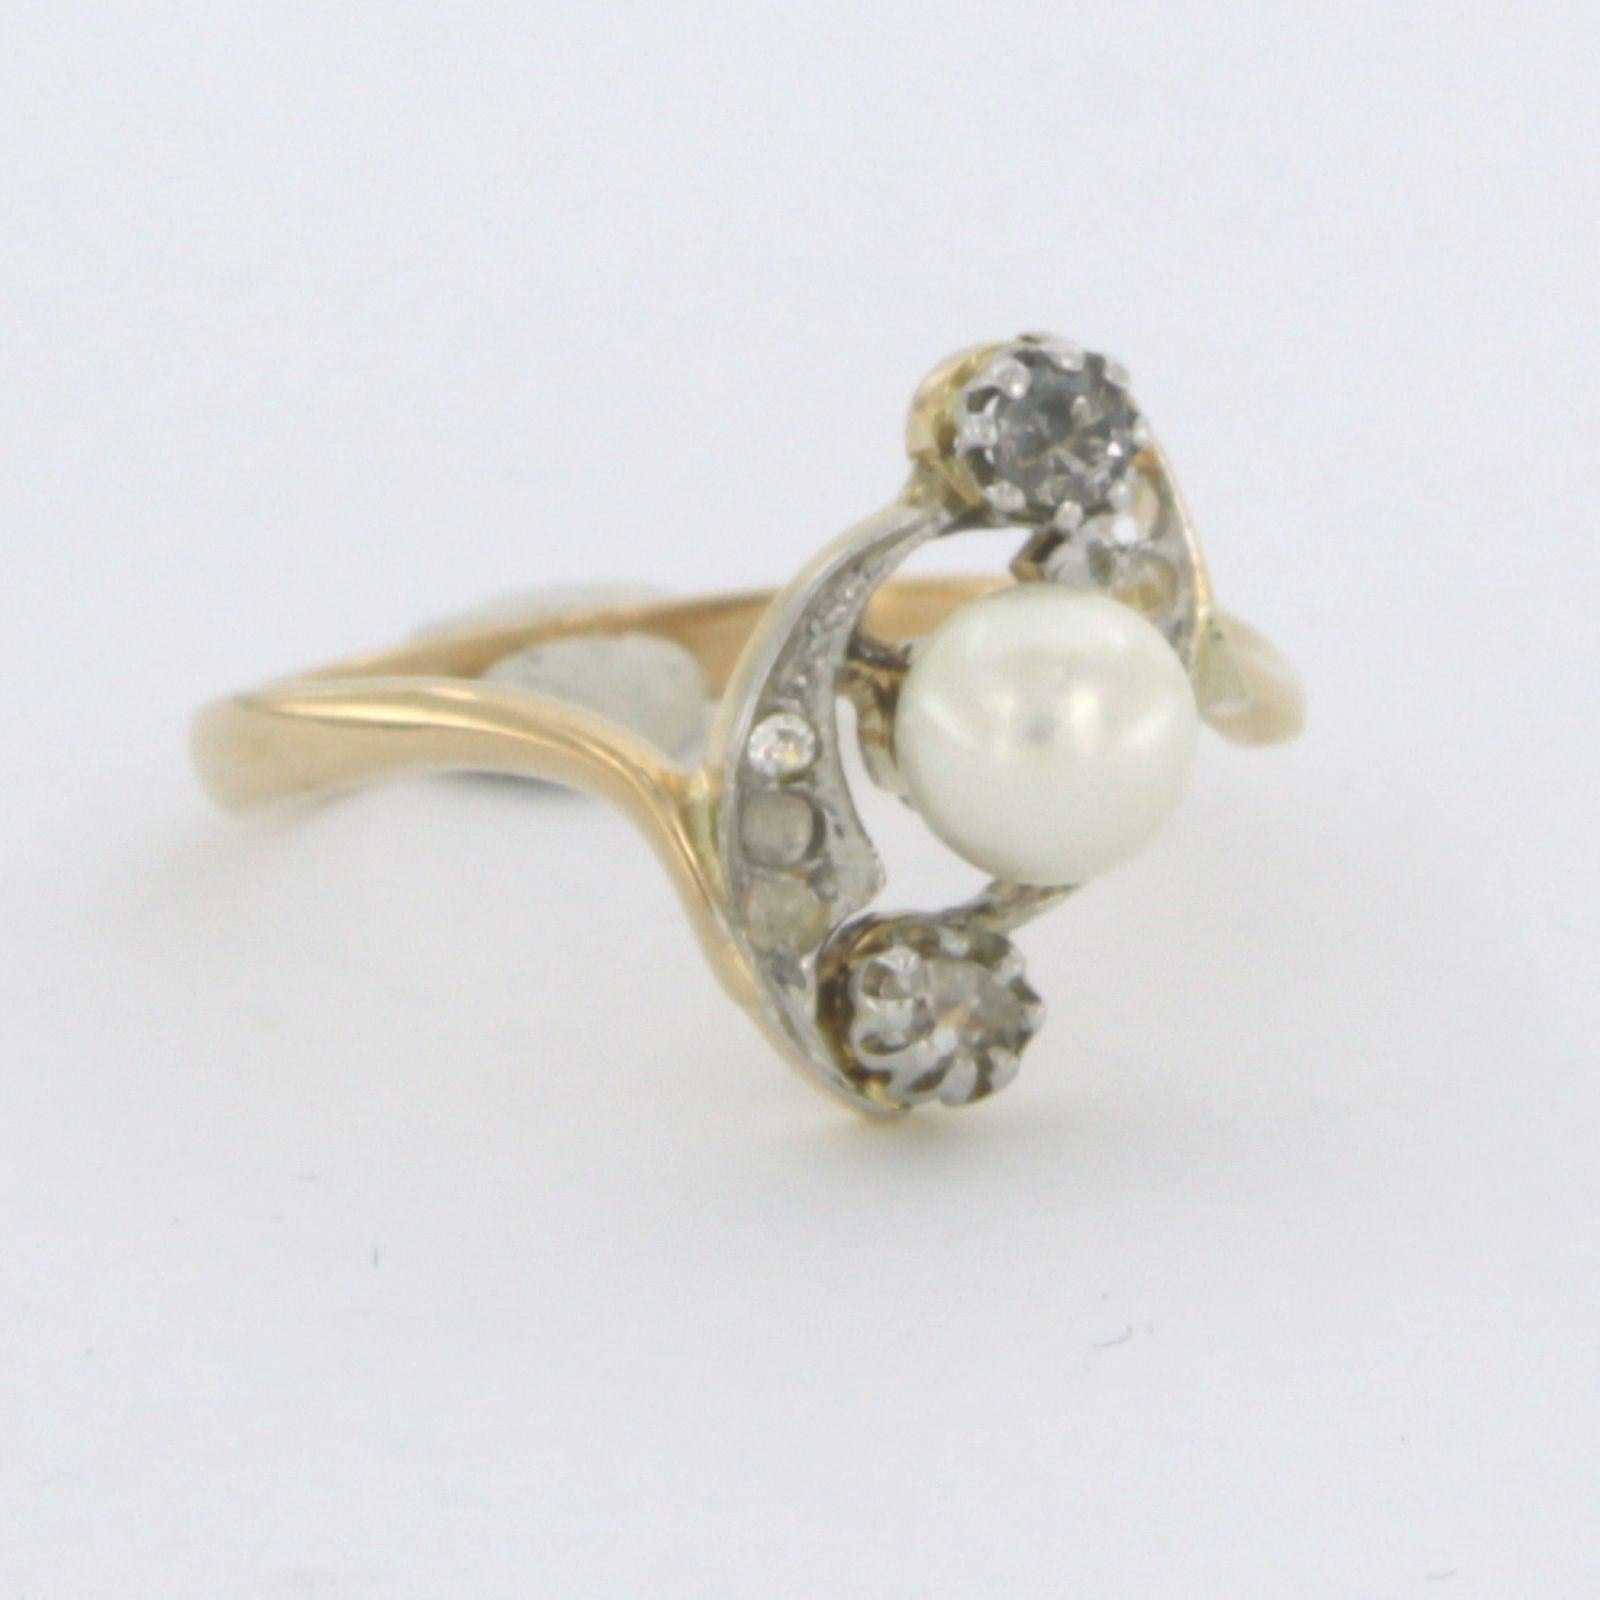 18k zweifarbiger Goldring mit Perle und Diamant im Rosenschliff 0,10ct G/H - SI - Ringgröße US. 7.5 - EU. 17.75 (56)

ausführliche Beschreibung

die Oberseite des Rings ist 1,4 cm breit und 7,5 mm hoch

Ringgröße US 7.5 - EU. 17.75 (56), Ring kann